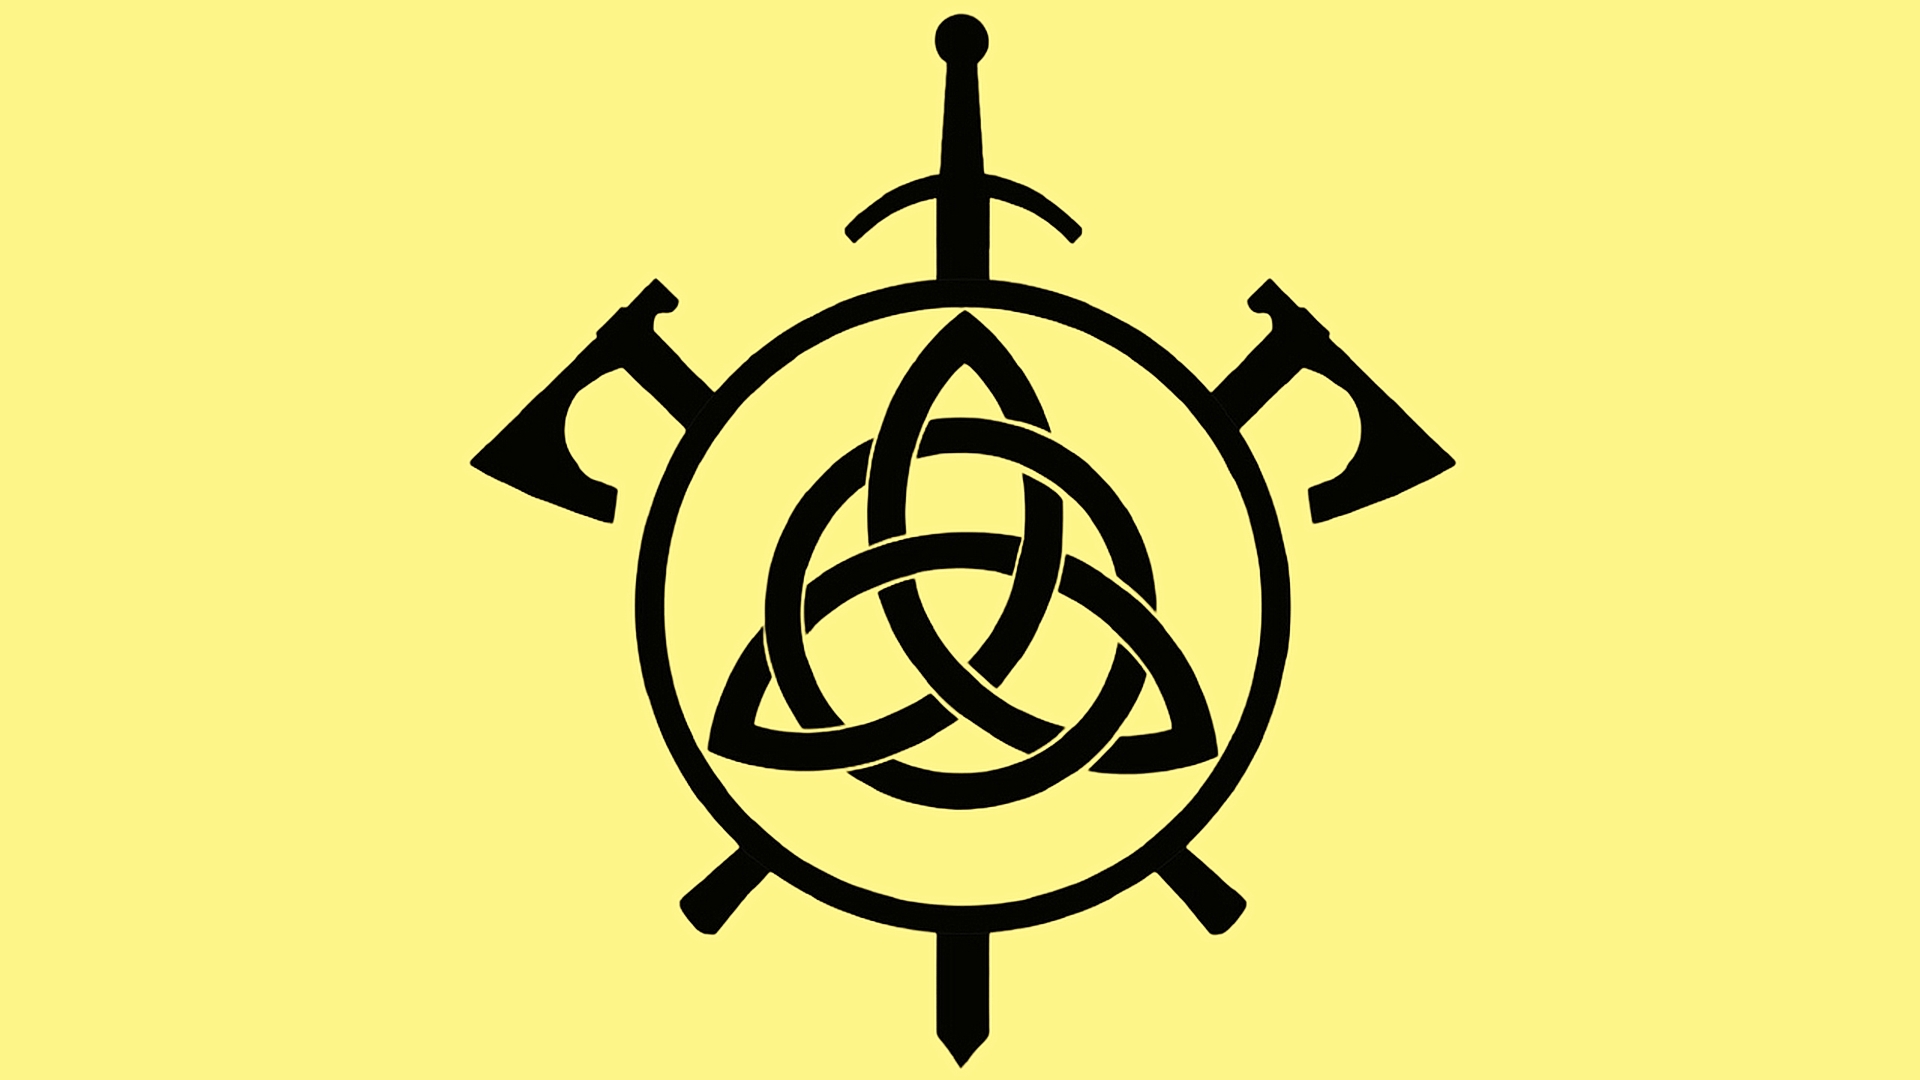 布罗德克斯骑士俱乐部的徽章